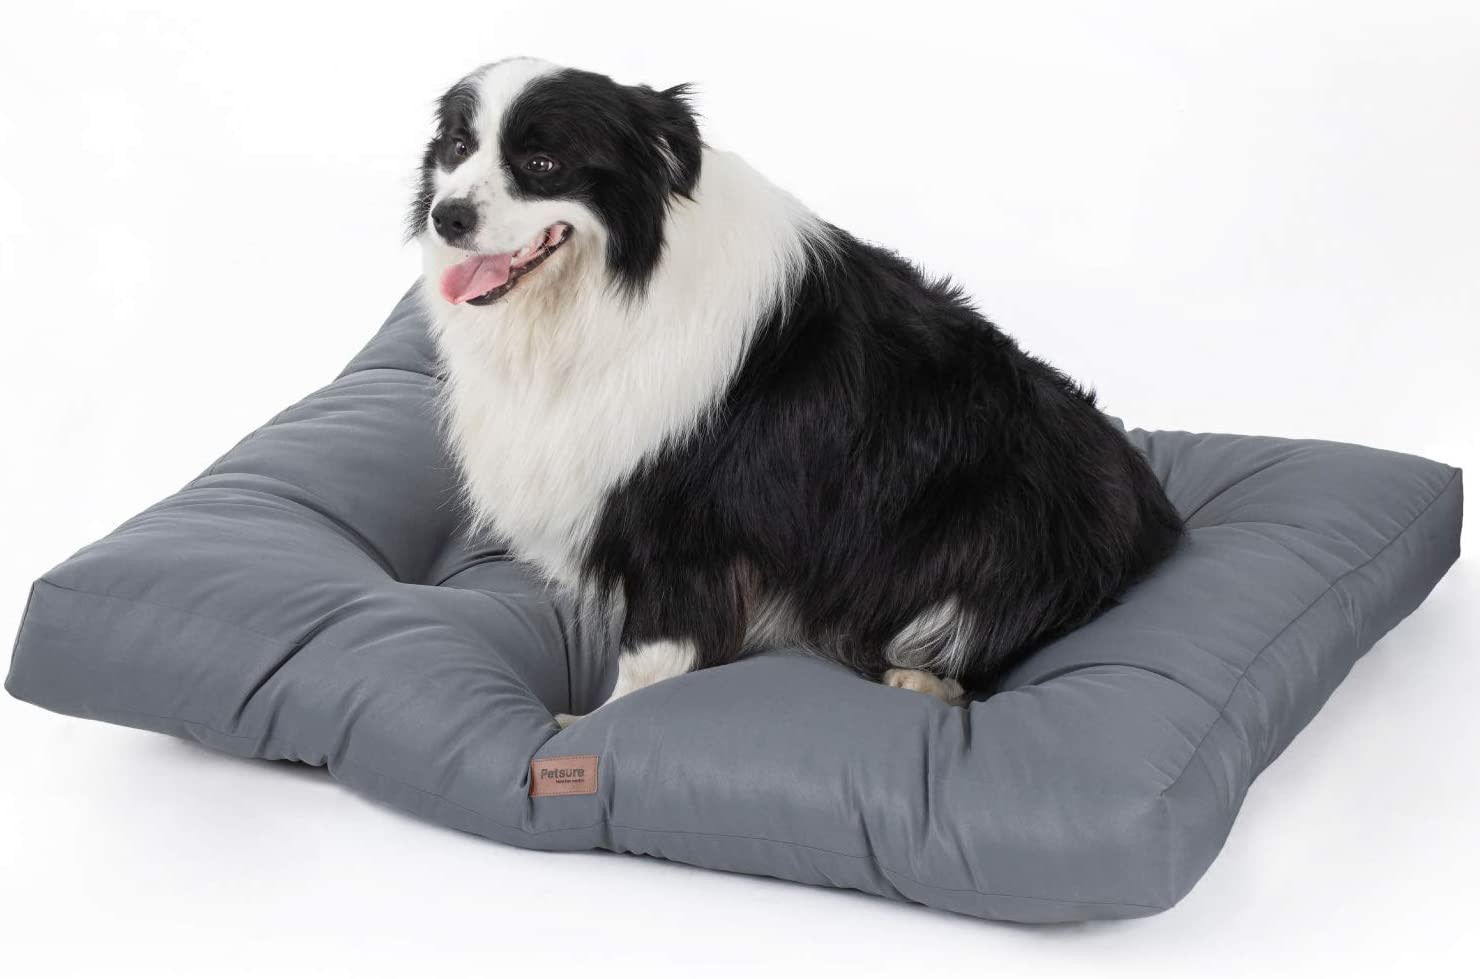  Bedsure Camas para Perros Grandes Impermeable - Colchón Perro Lavable Suave - 110x89x10 cm,Gris,XL 